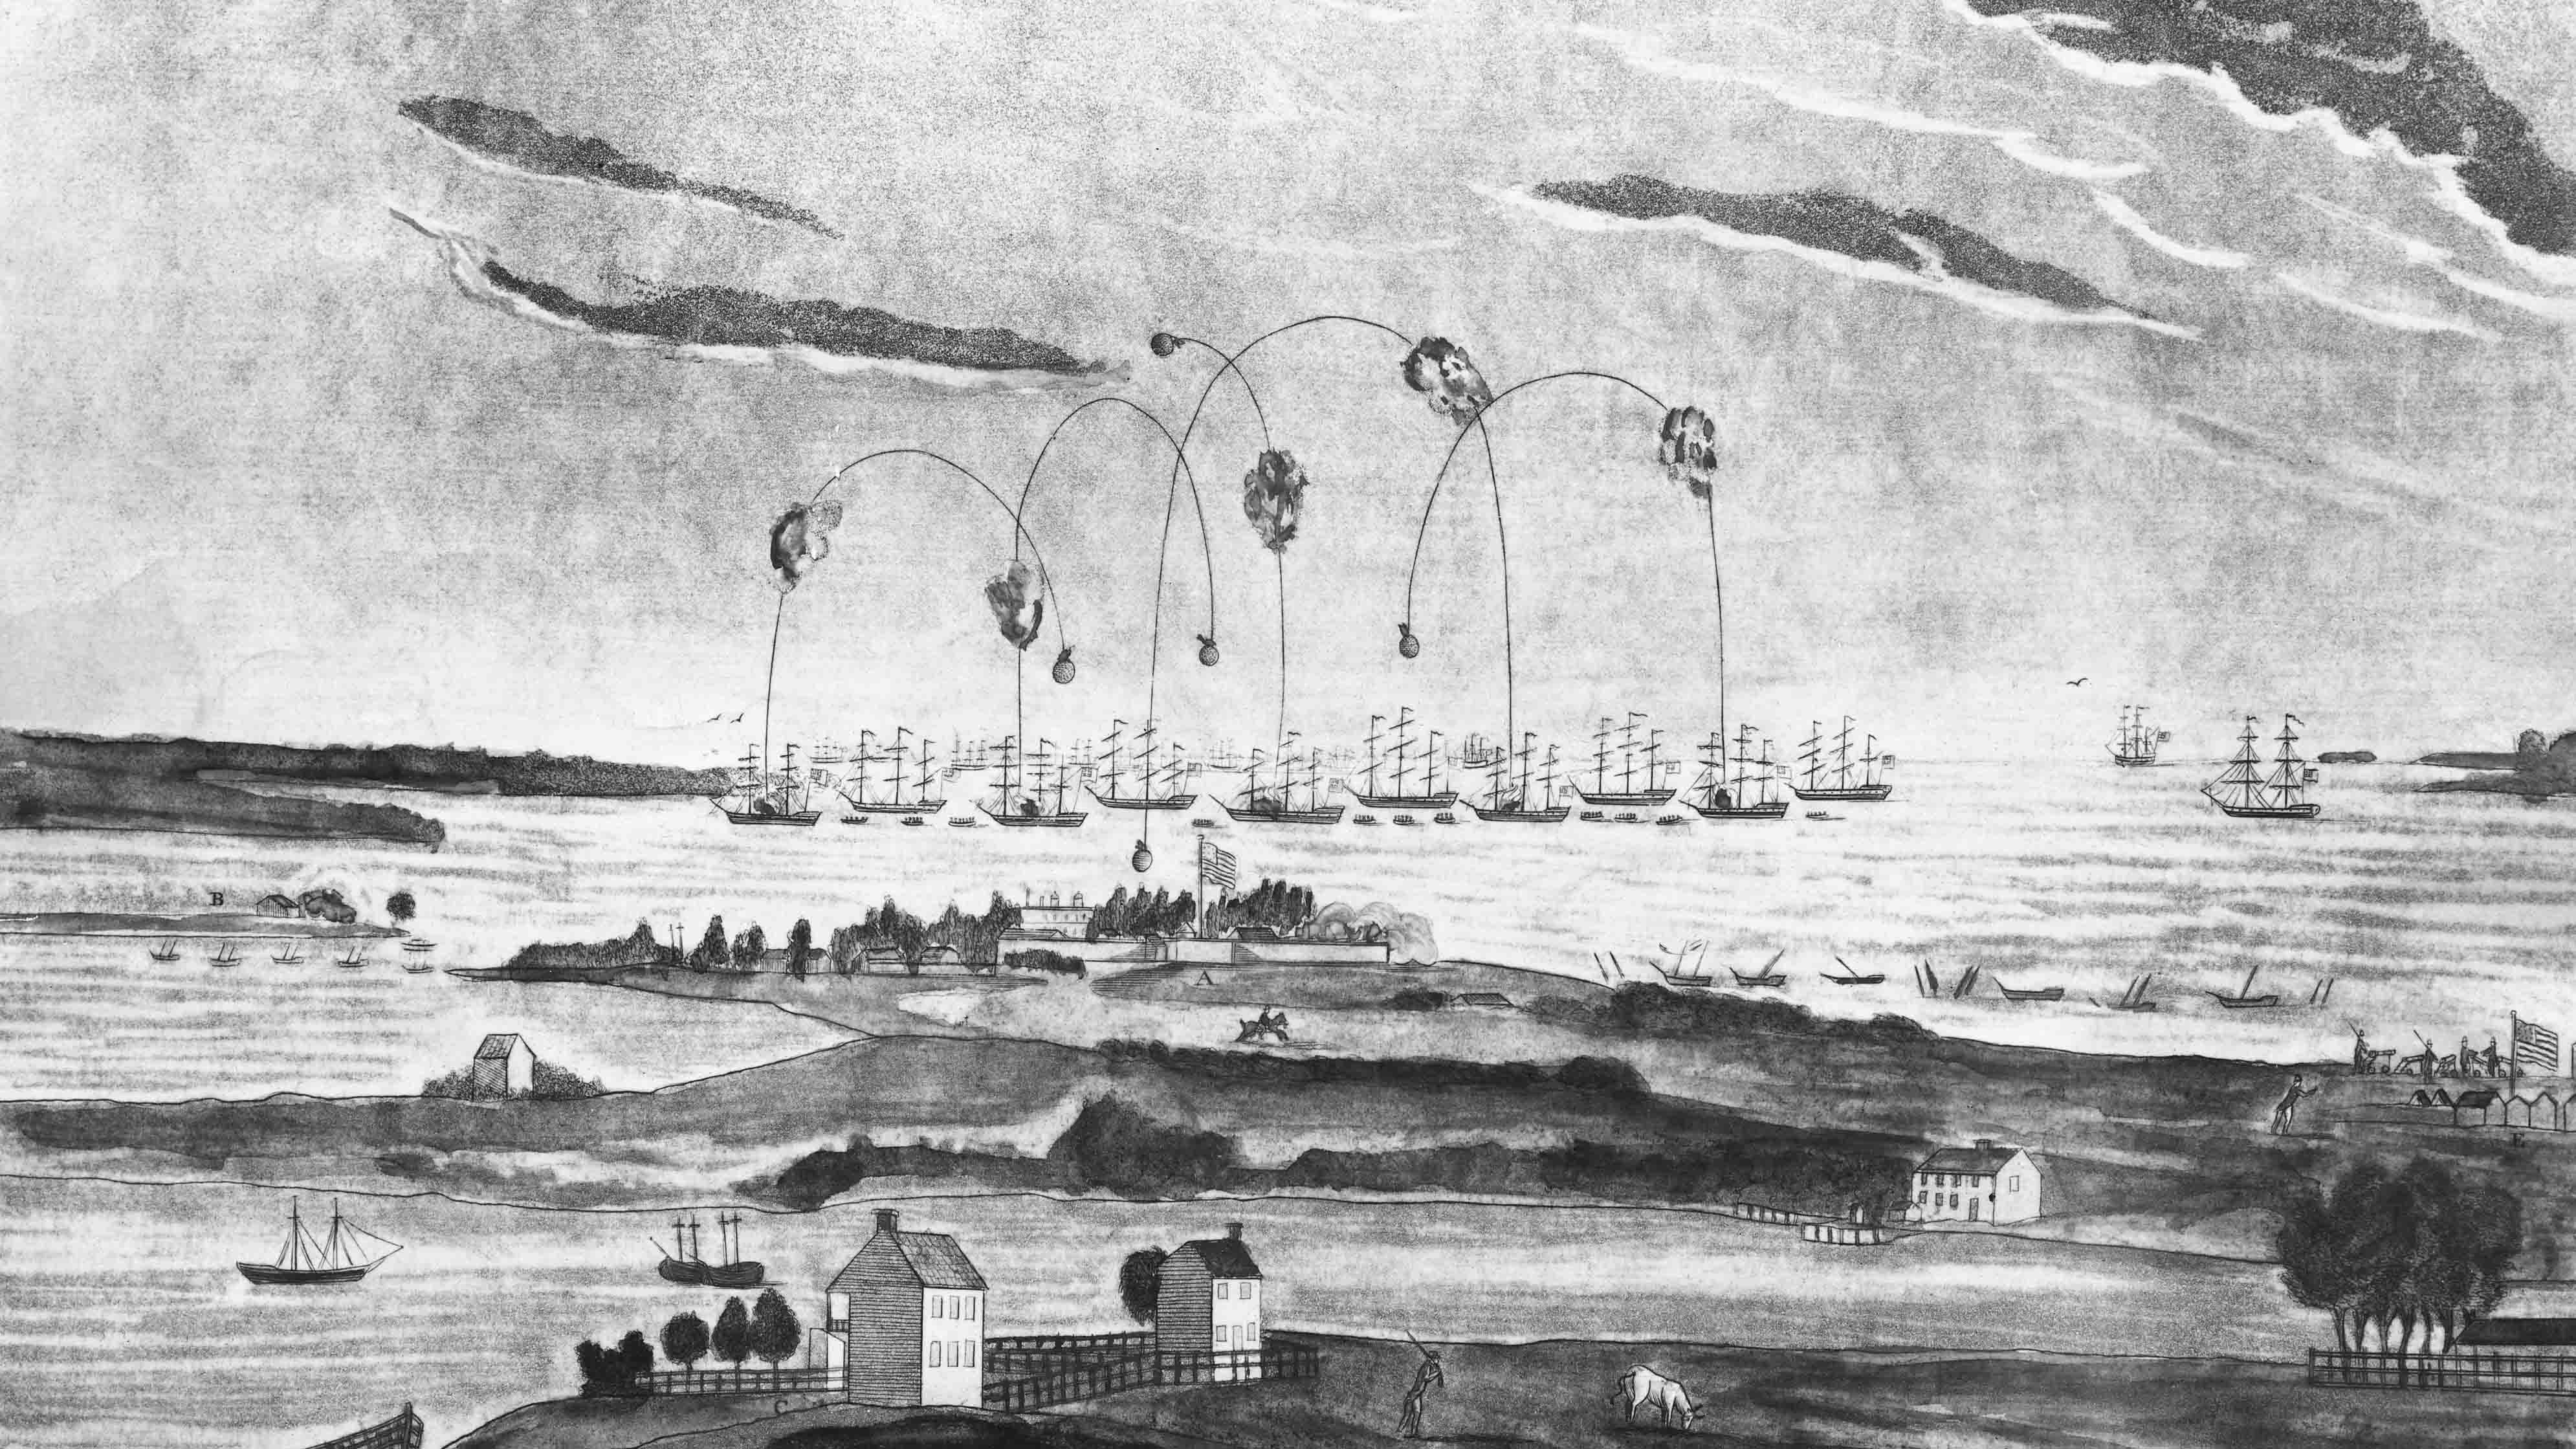 El bombardeo de Fort McHenry por las fuerzas británicas el 13 de septiembre de 1814. La defensa del fuerte inspiró a Francis Scott Key a escribir el poema que se convirtió en el himno nacional estadounidense, The Star-Spangled Banner.